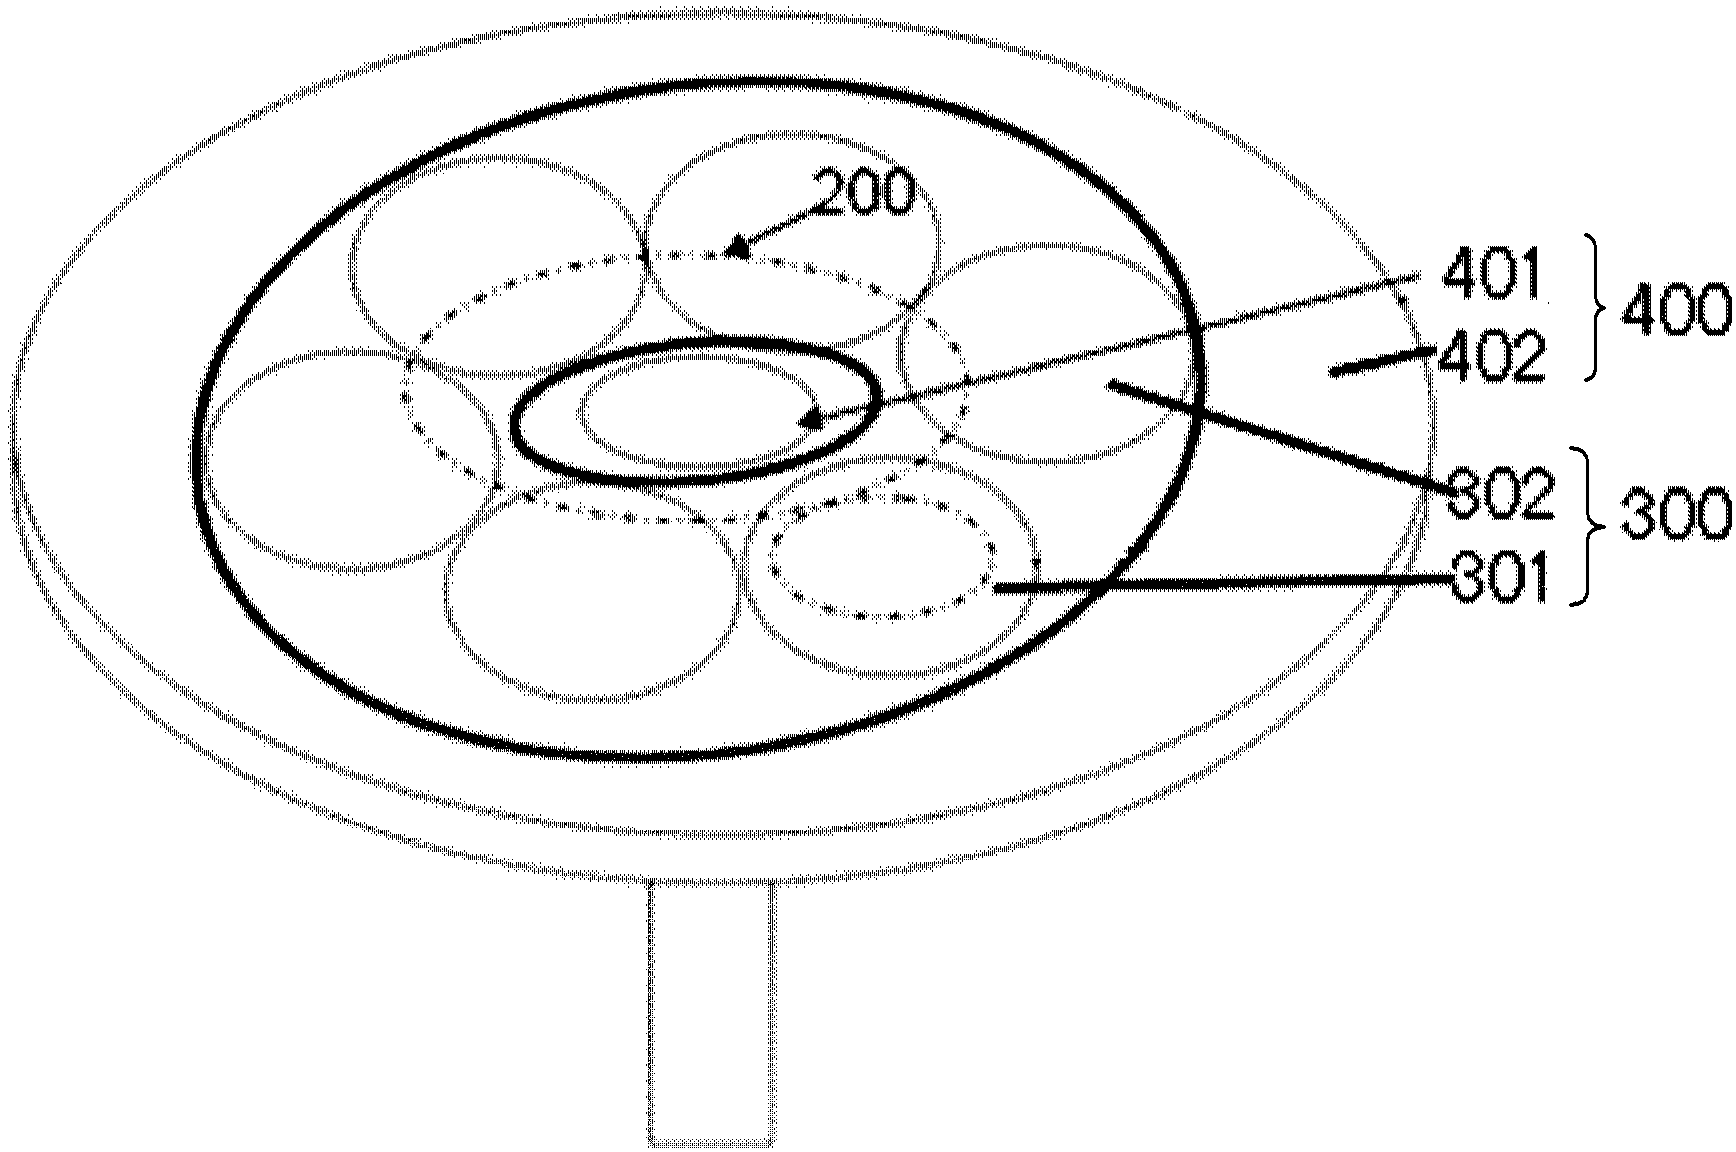 Planetary rotary tray device